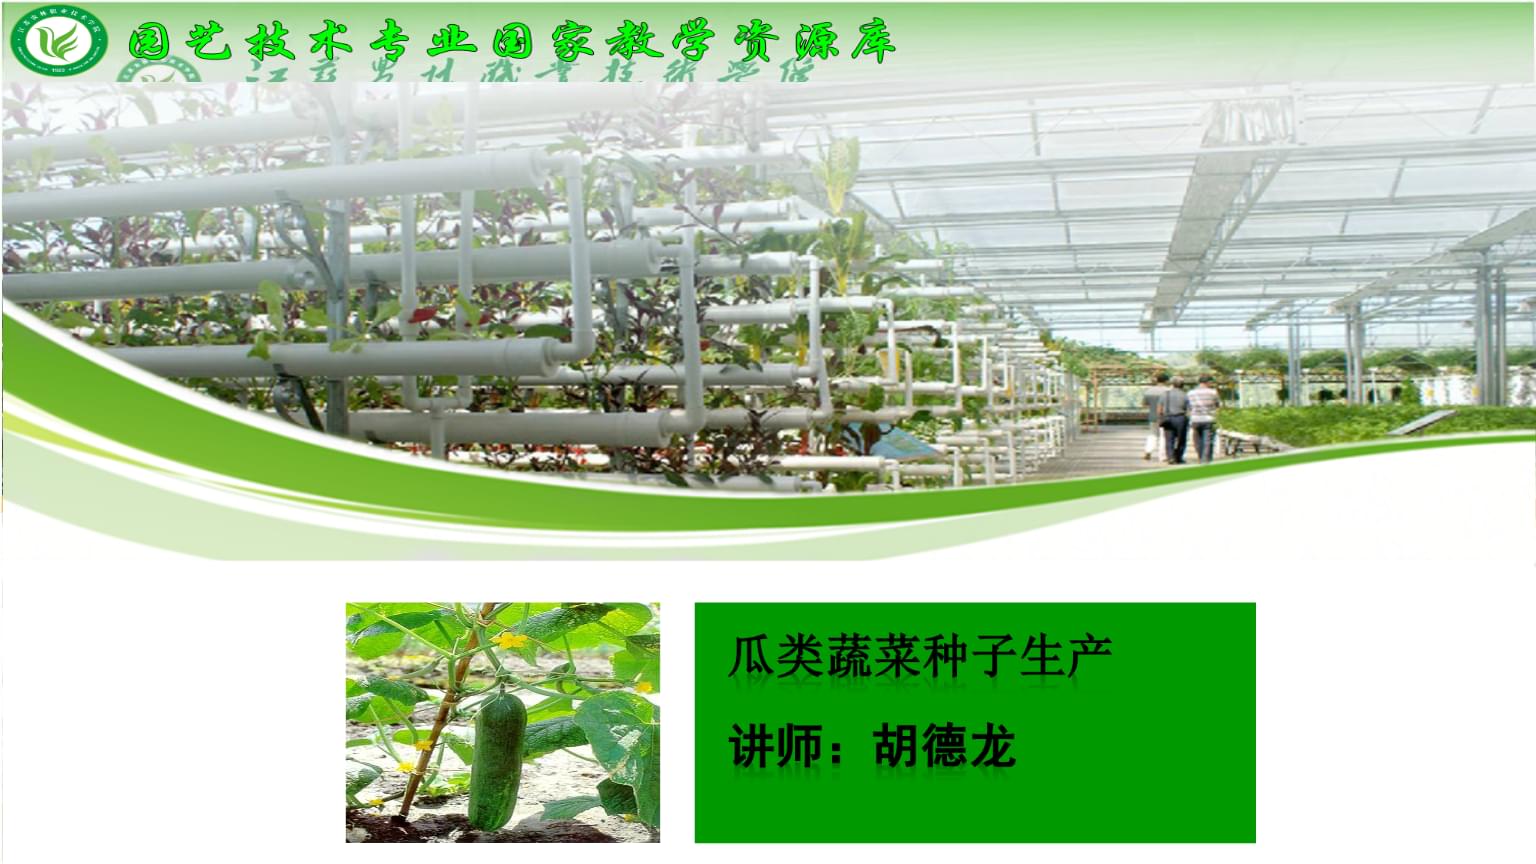 园艺植物种子生产 主要蔬菜植物种子生产 1、瓜类蔬菜种子生产.ppt